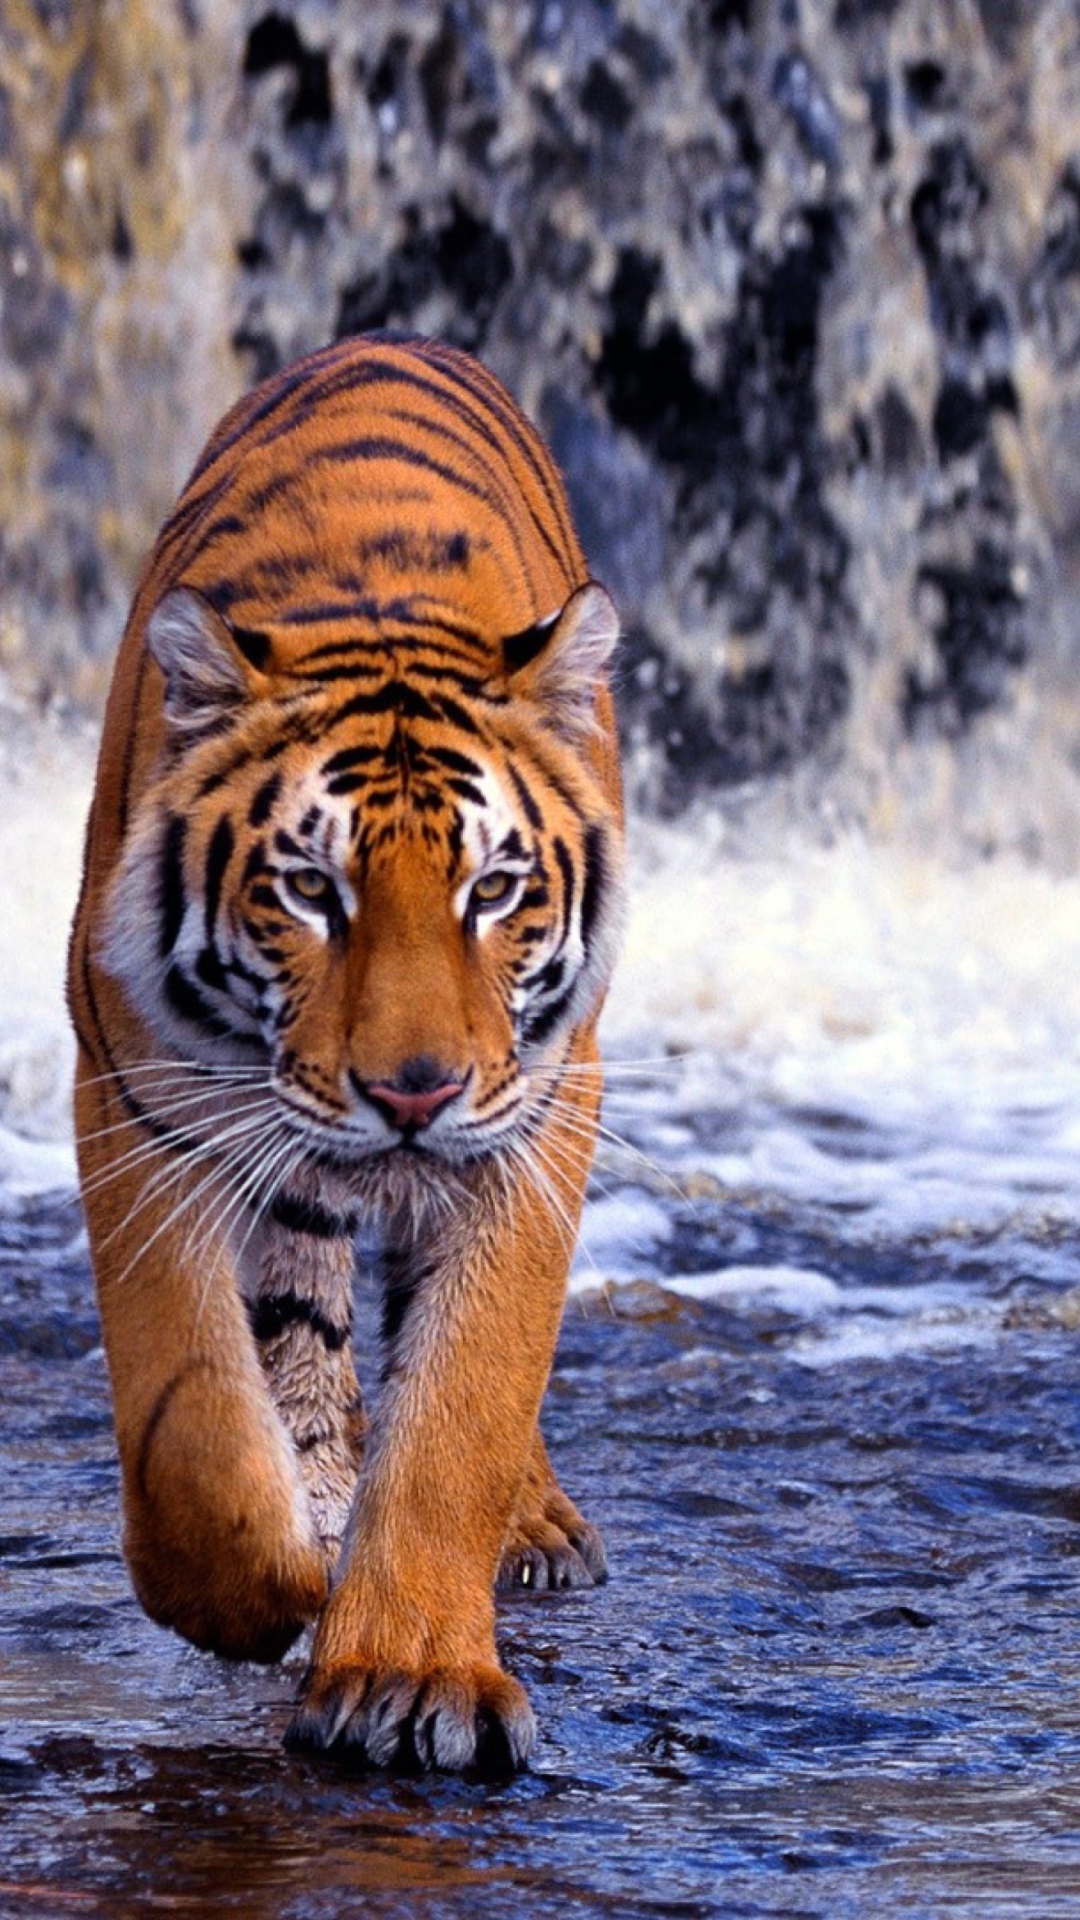 Обои Tiger And Waterfall 1080x1920